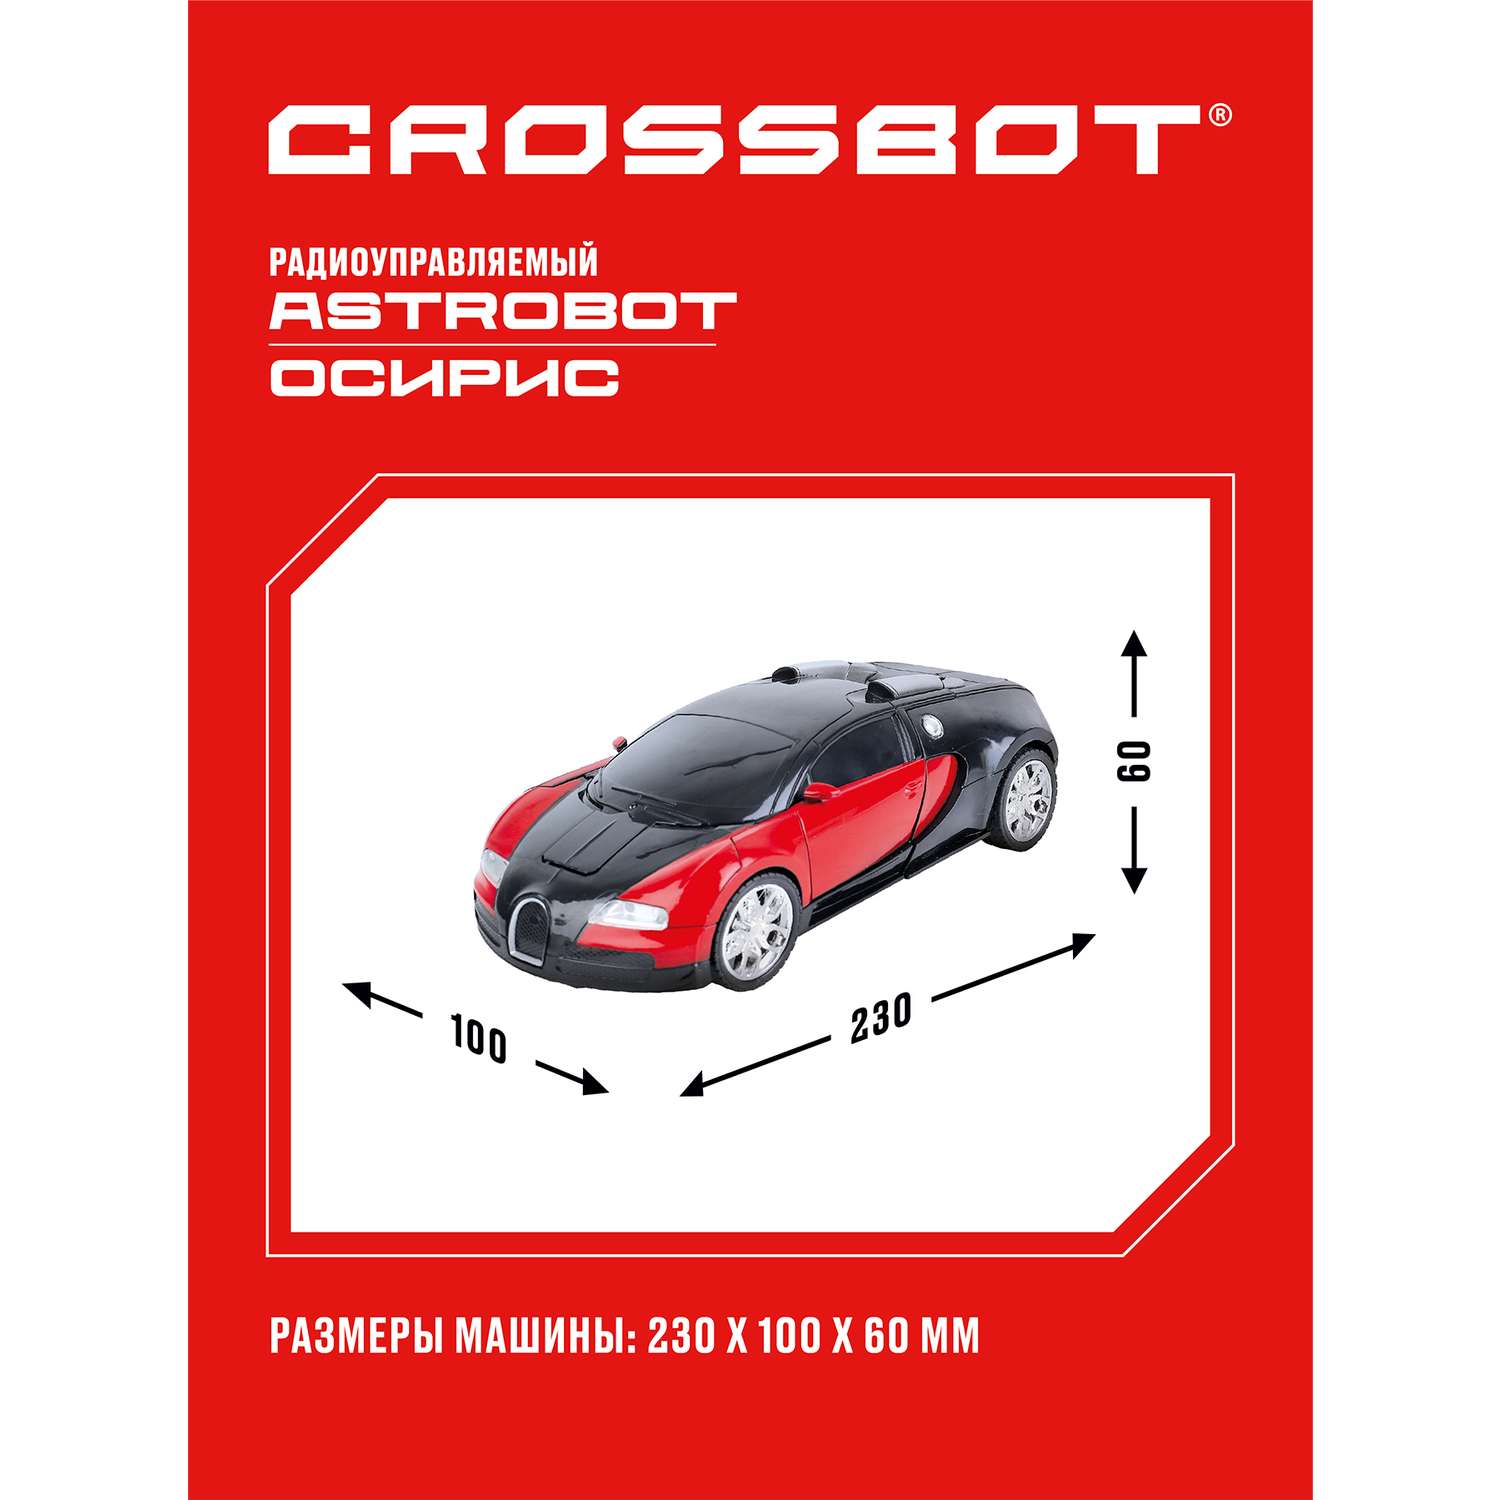 Машина на пульте управления CROSSBOT трансформер Astrobot Осирис - фото 3